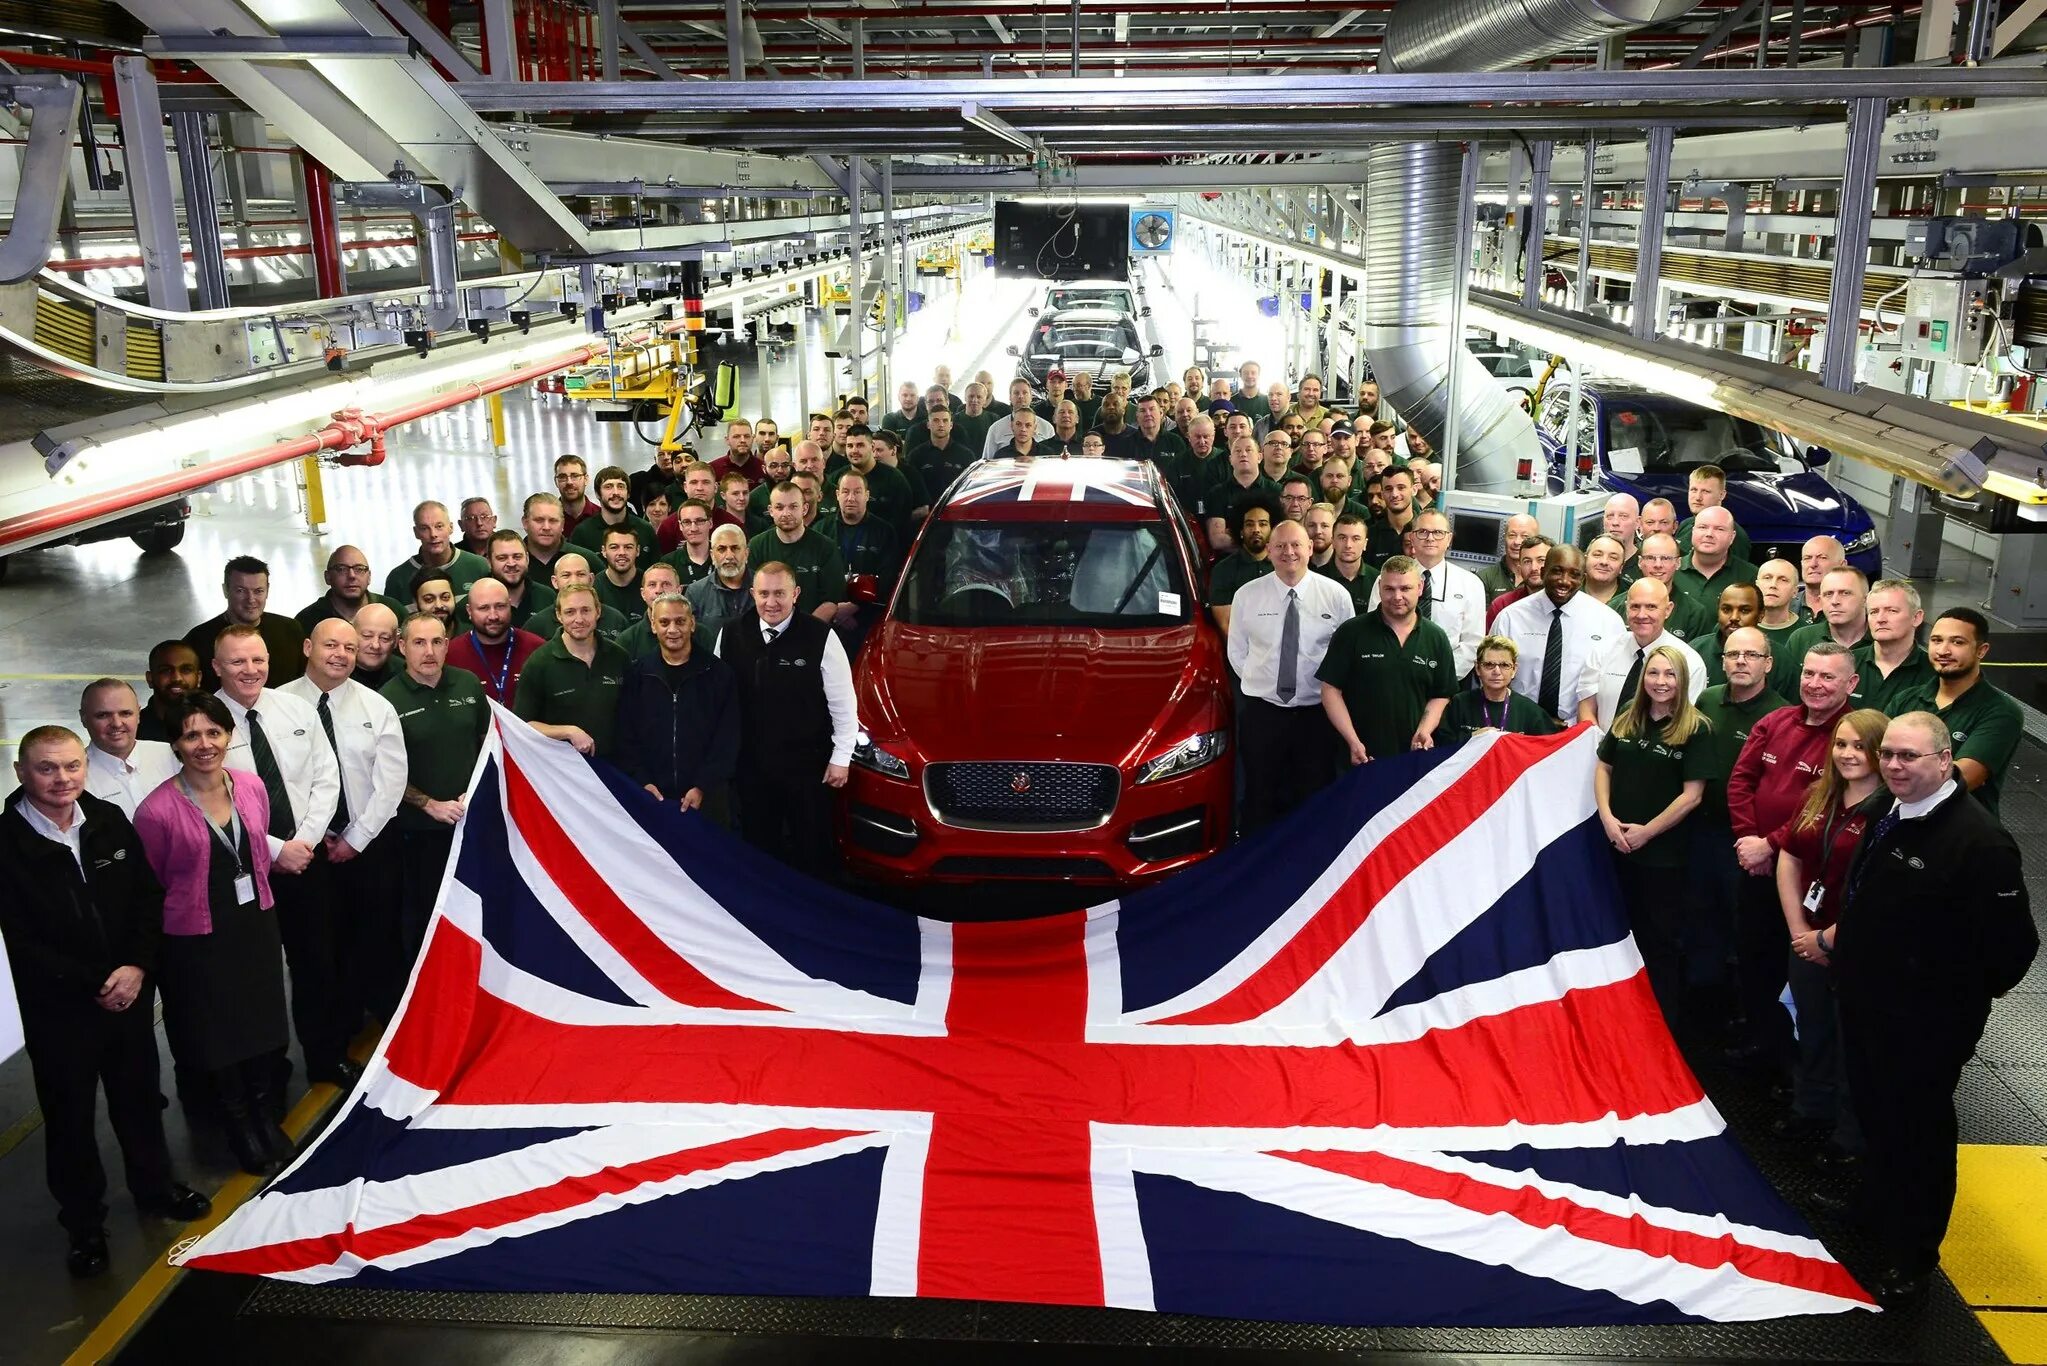 Industry in britain. Автомобильная промышленность Великобритании. Машиностроение в Британии. Автомобилестроение в Британии. Индустрия Великобритании.